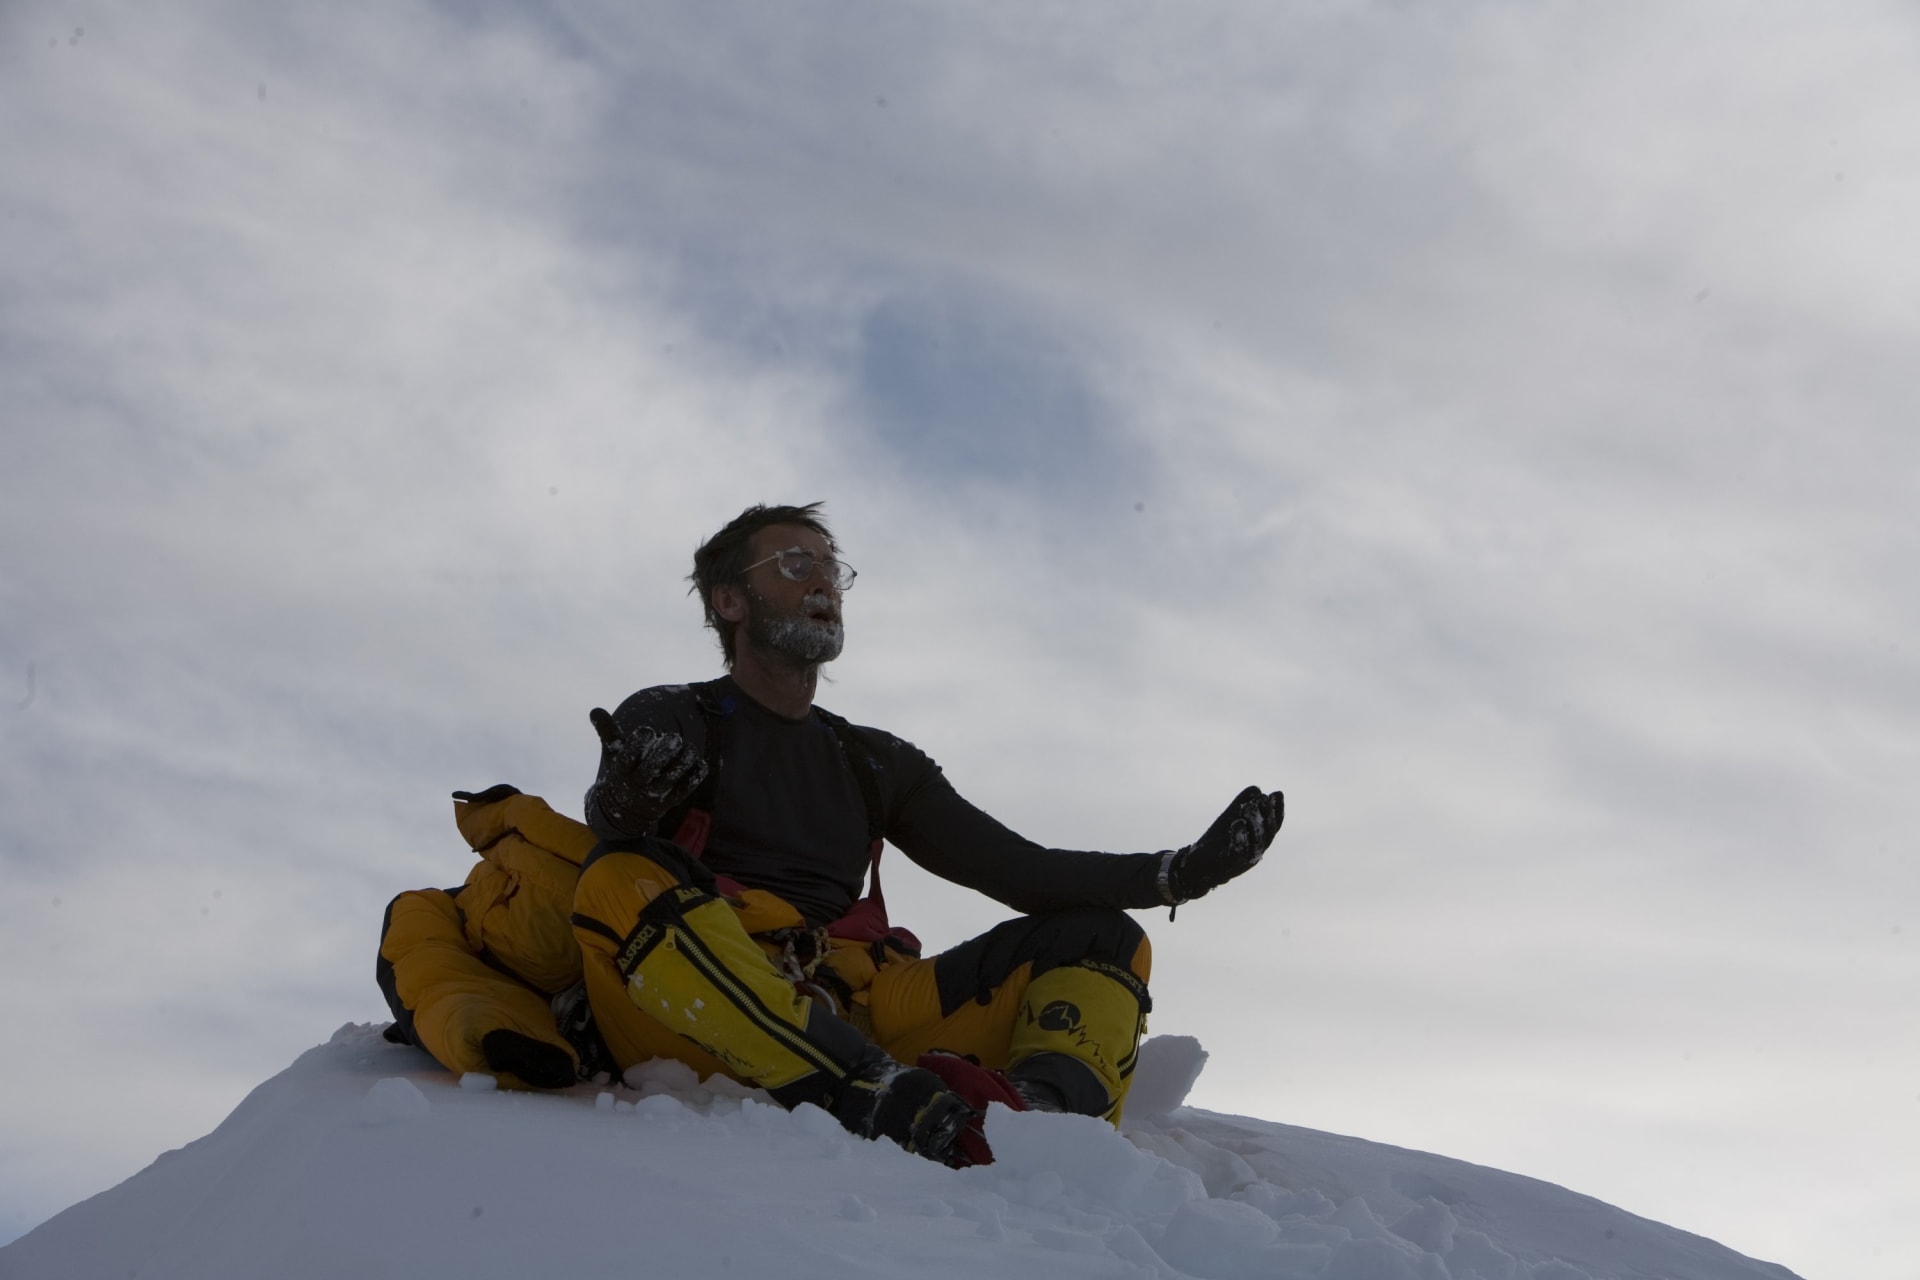 Lincoln Hall strávil noc pod vrcholem Everestu bez kyslíku a stanu a přesto přežil